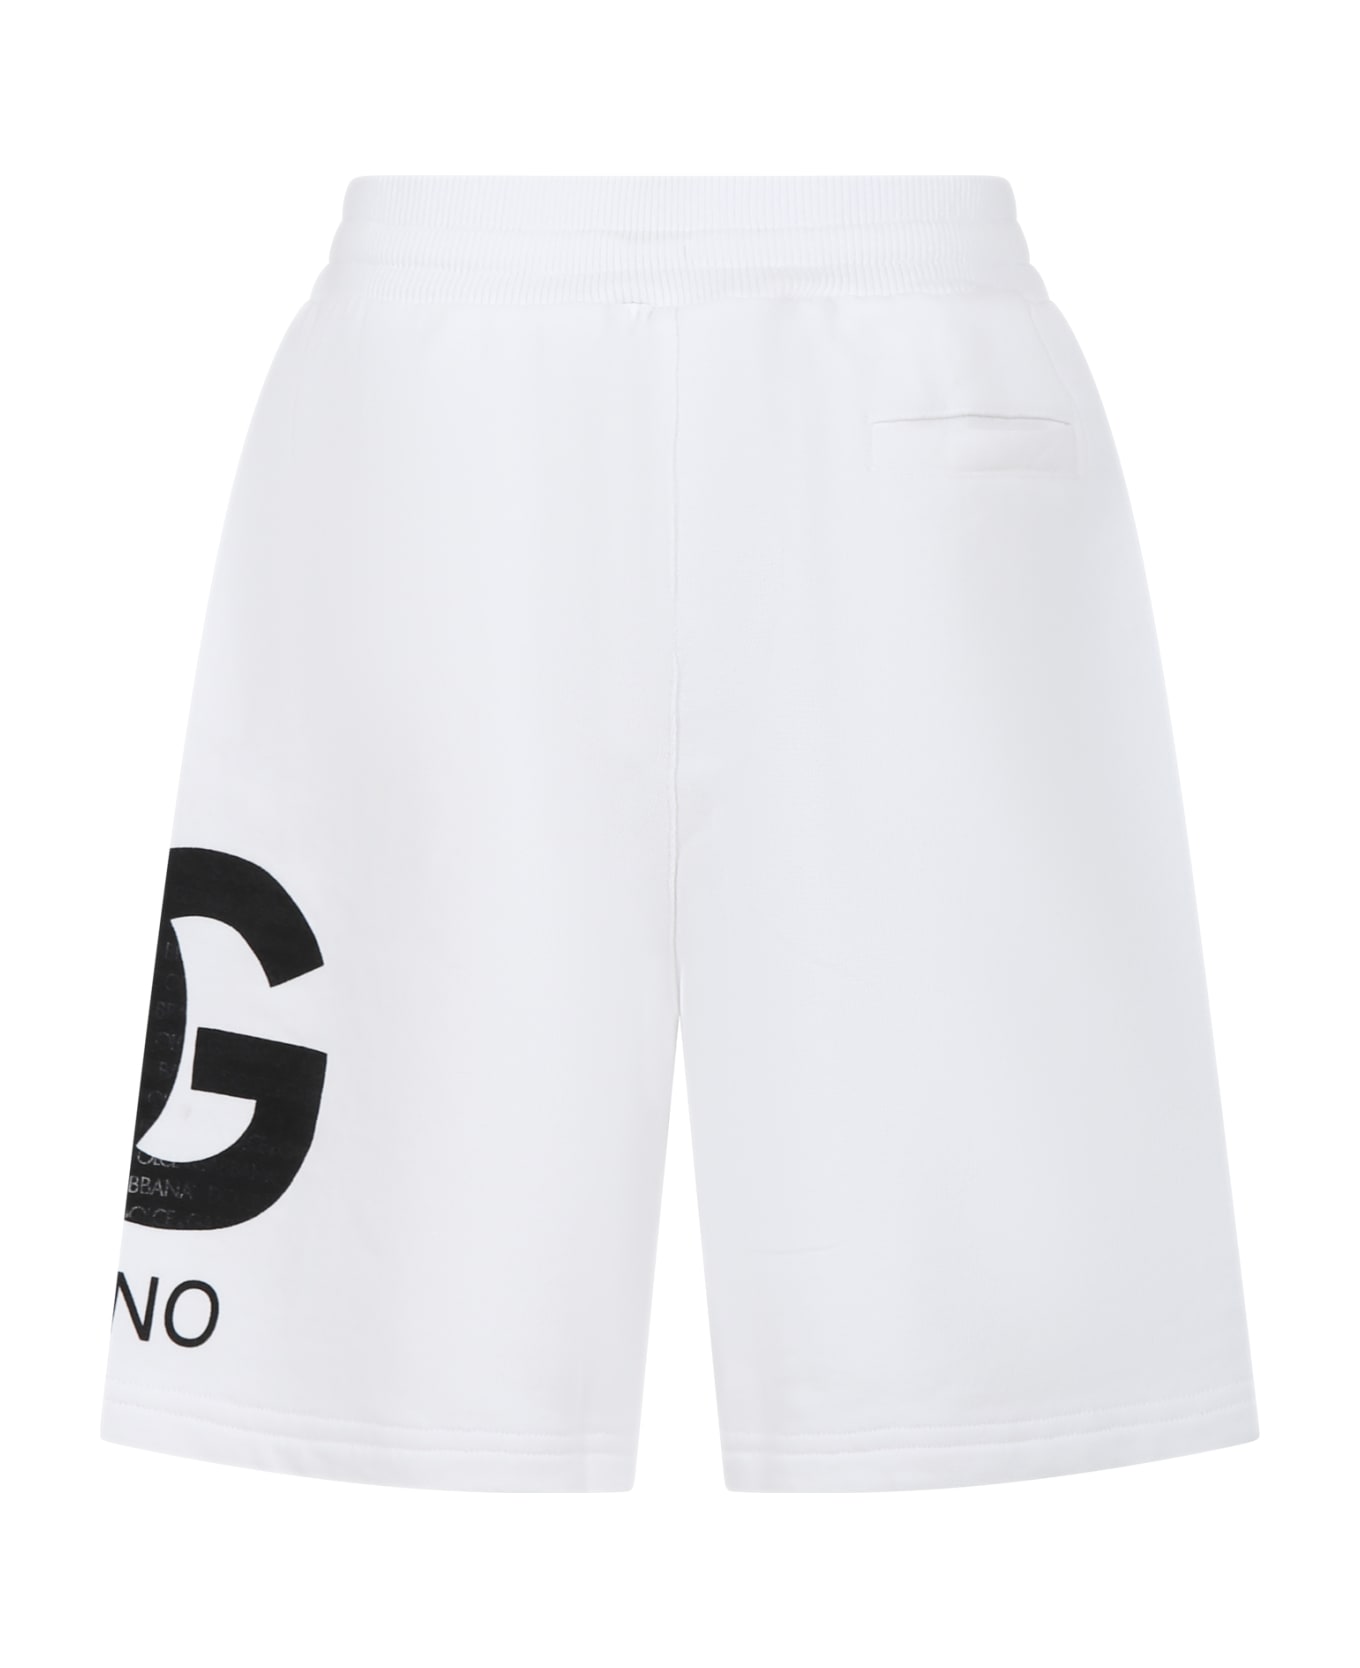 Dolce & Gabbana White Shorts For Boy With Iconic Monogram - Bianco Ottico